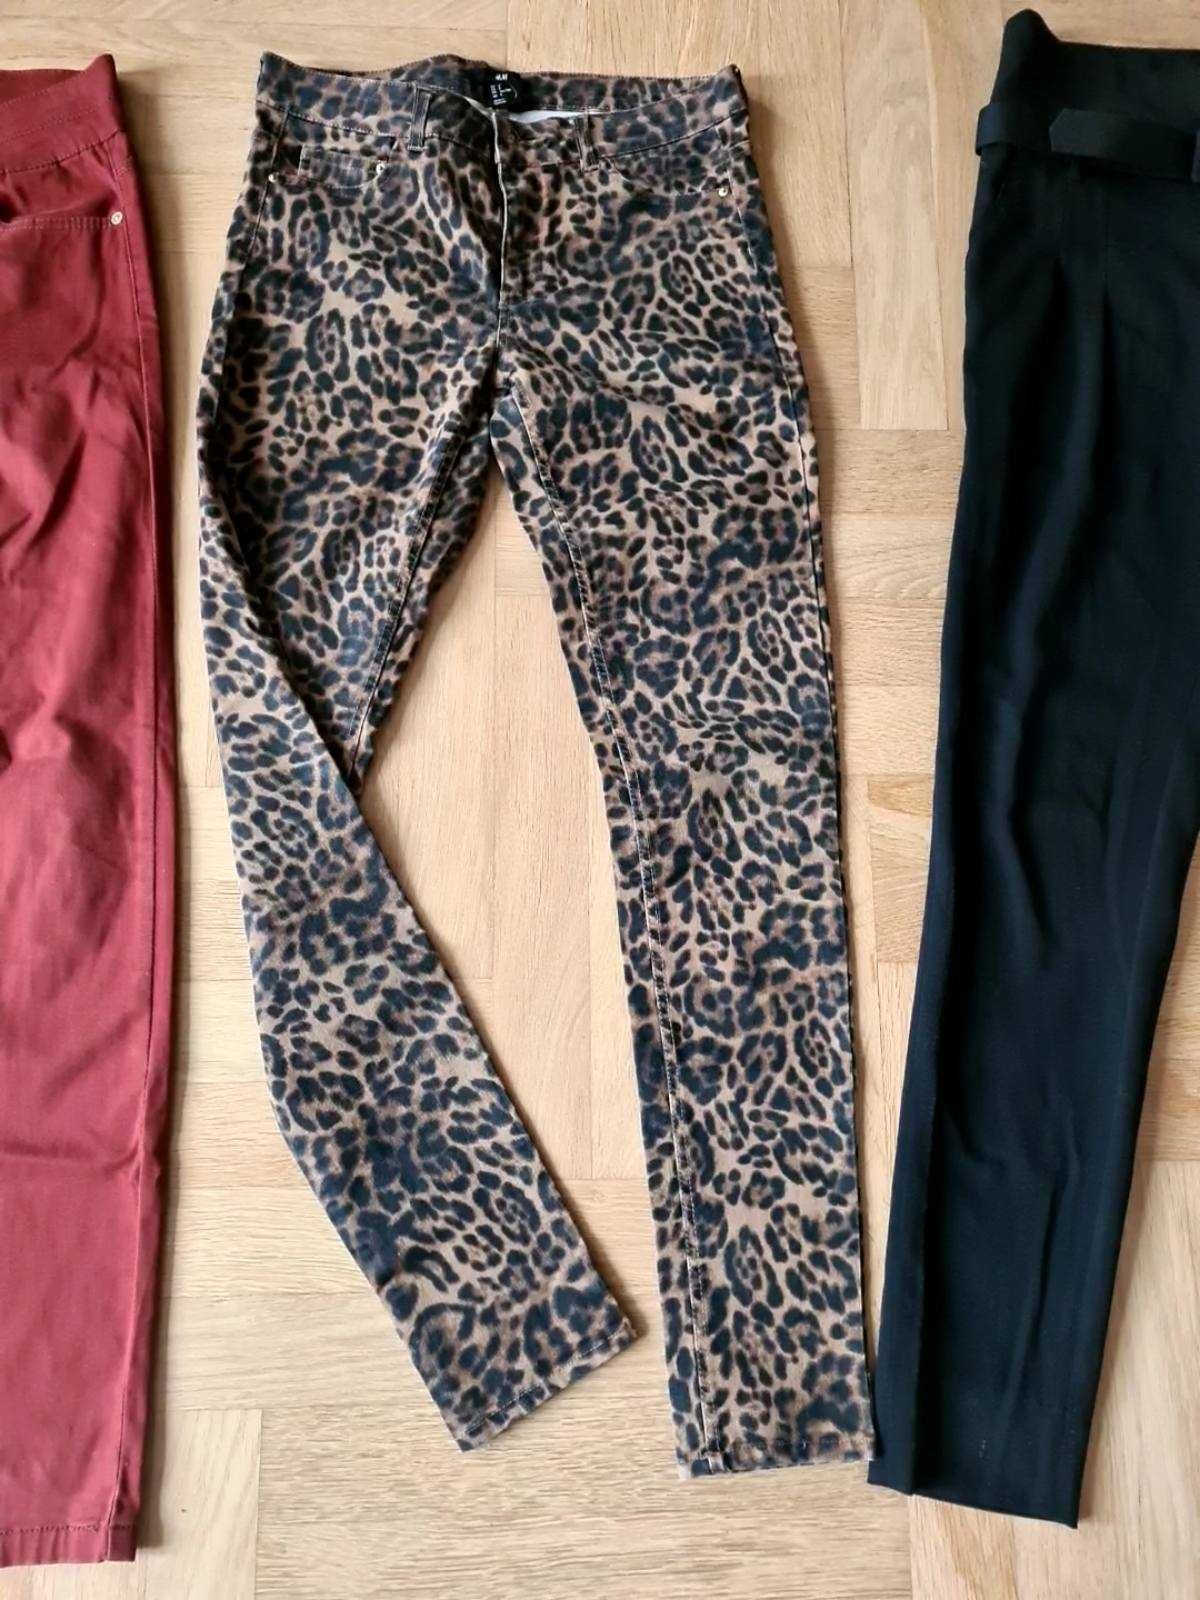 Джинсы (леопард и кирпичные), черные брюки, размер s/m